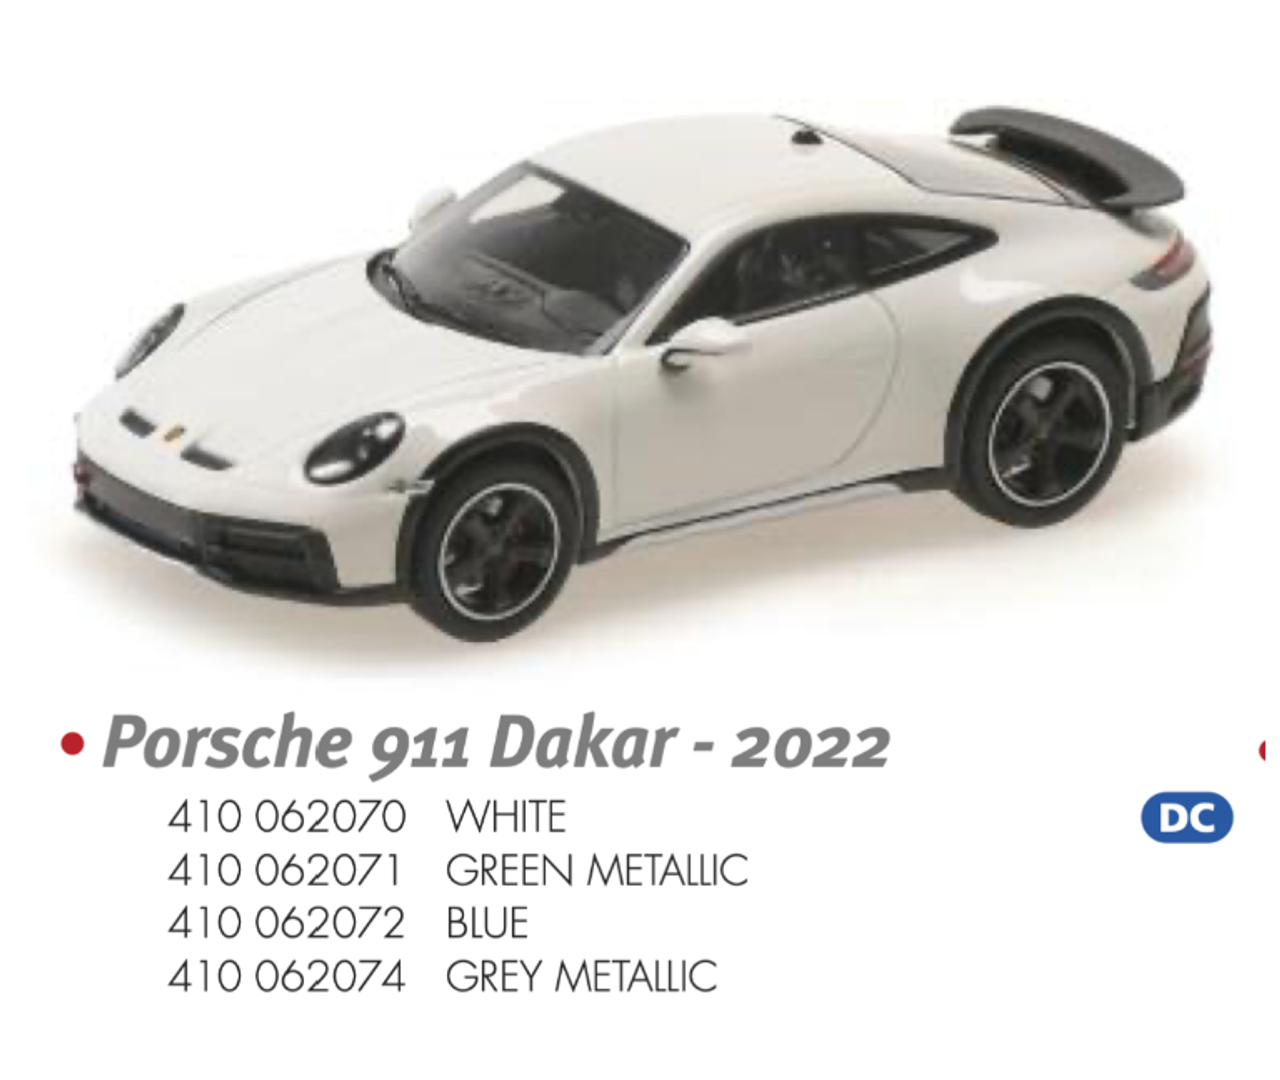 1/43 MINICHAMPS PORSCHE 911 DAKAR - 2022 - BLUE Diecast Car Model